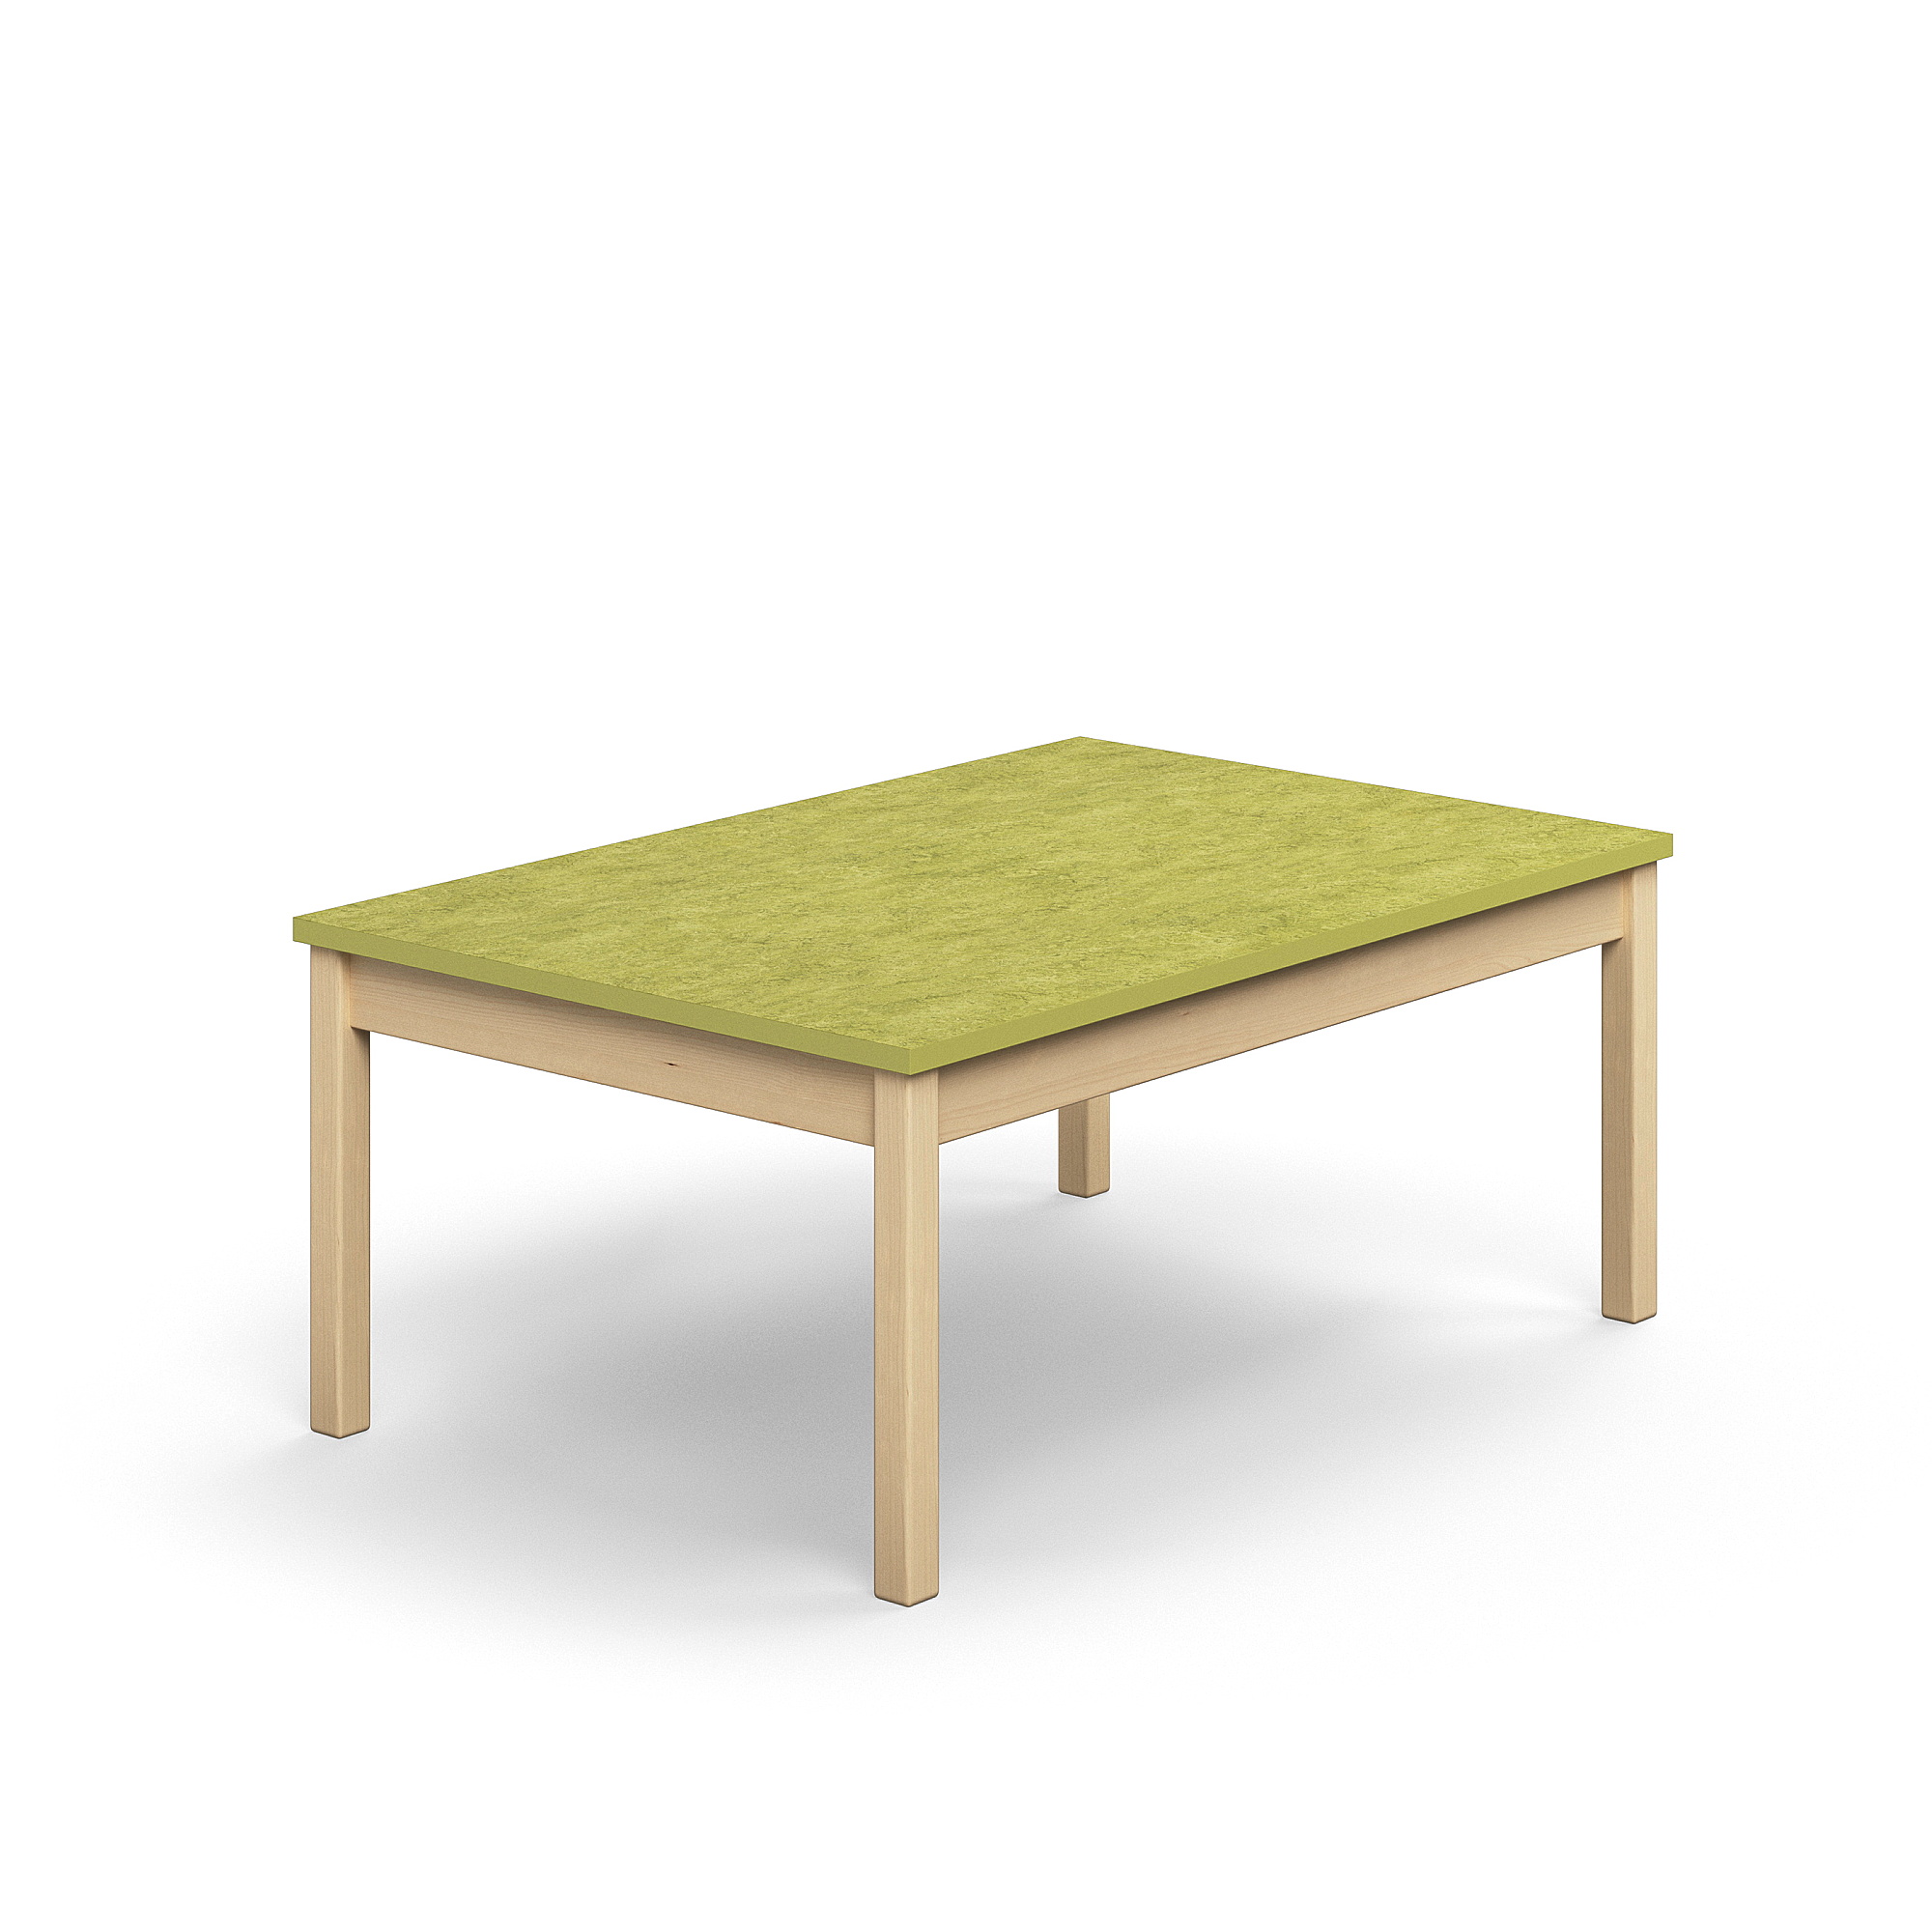 Stůl DECIBEL, 1200x800x530 mm, akustické linoleum, bříza/limetkově zelená